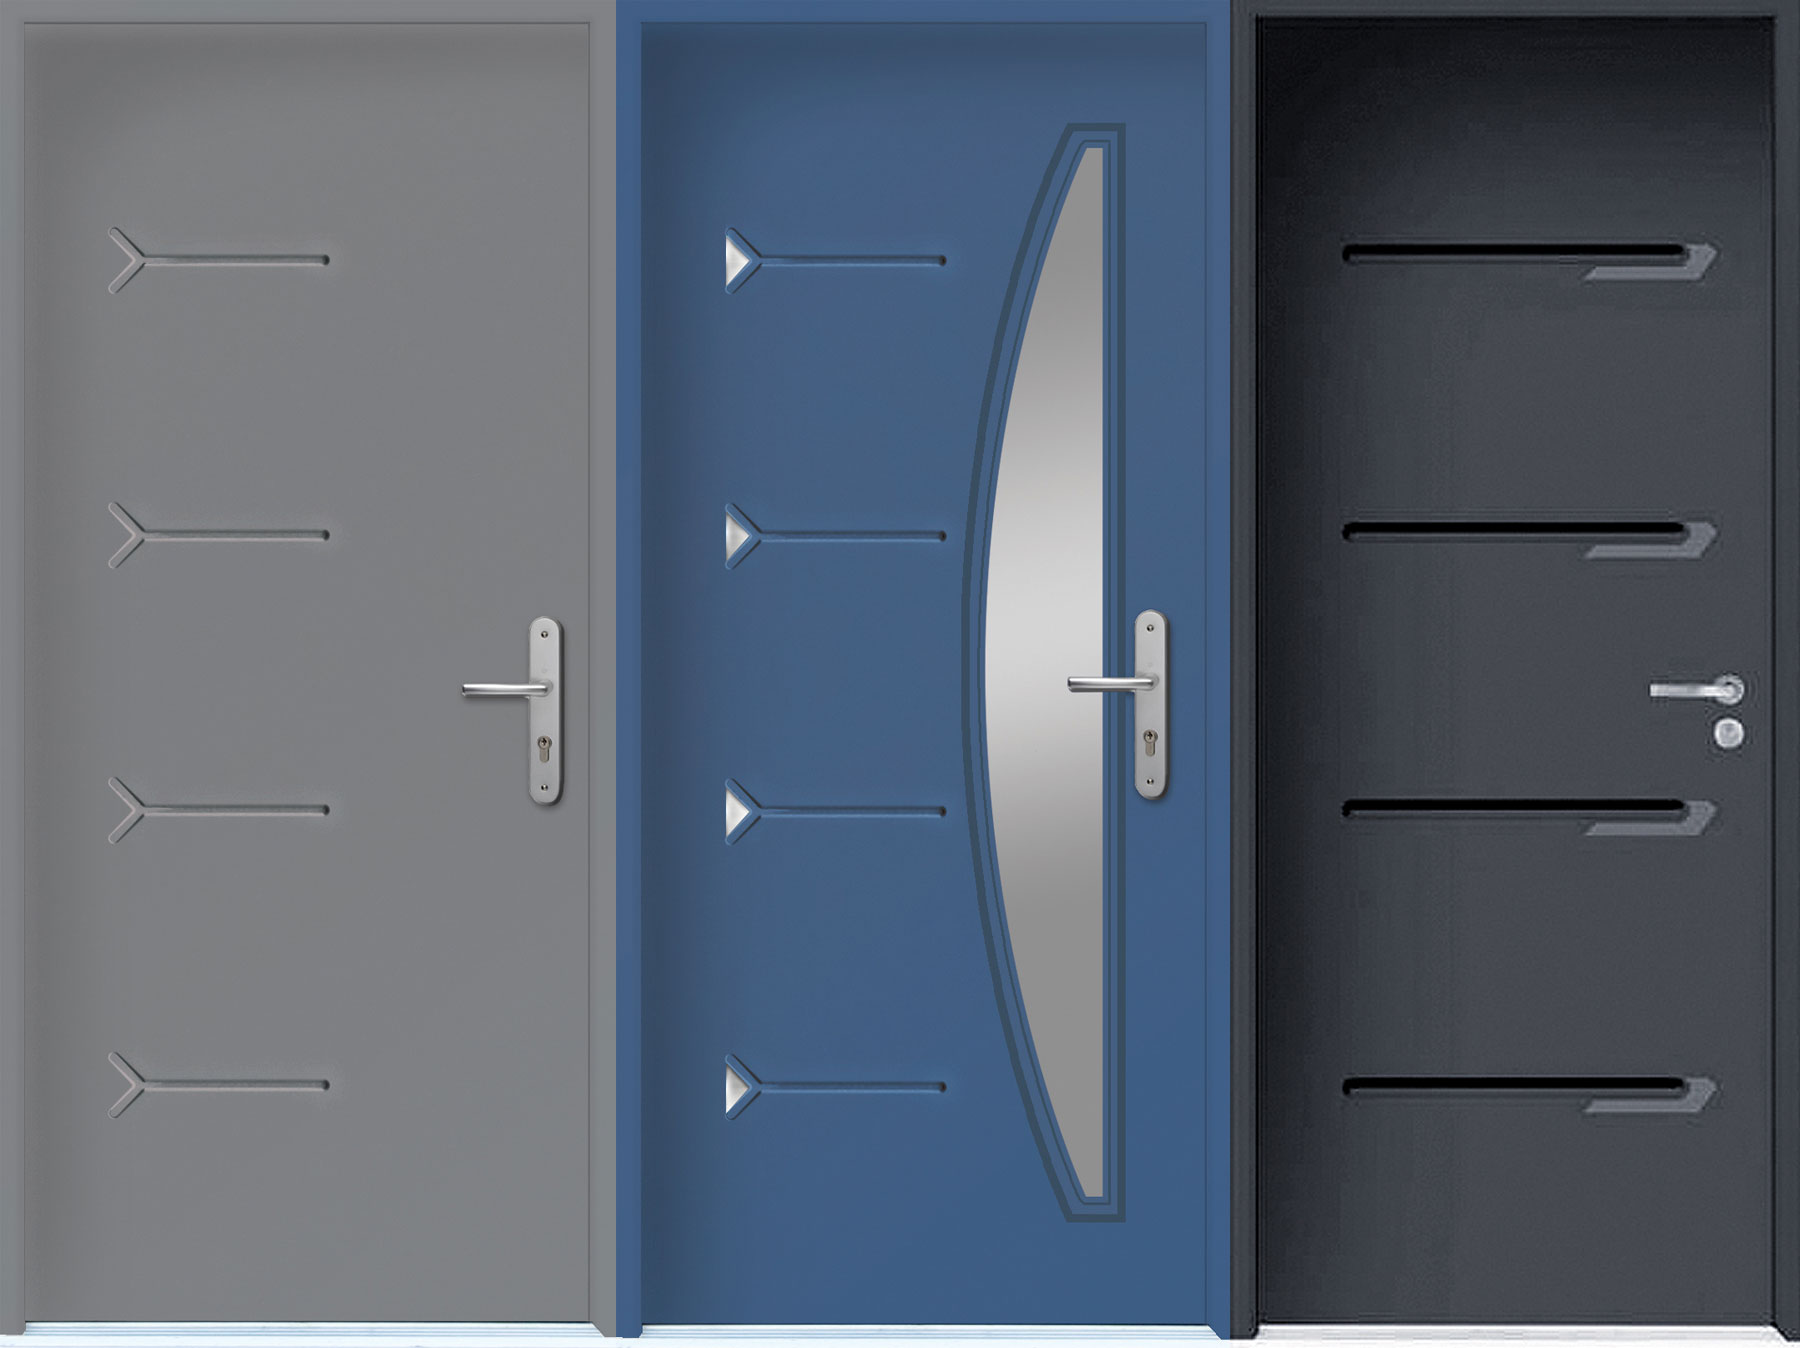 Výplň domovních dveří Rovex lze vybírat z četných barevných a designových variant.